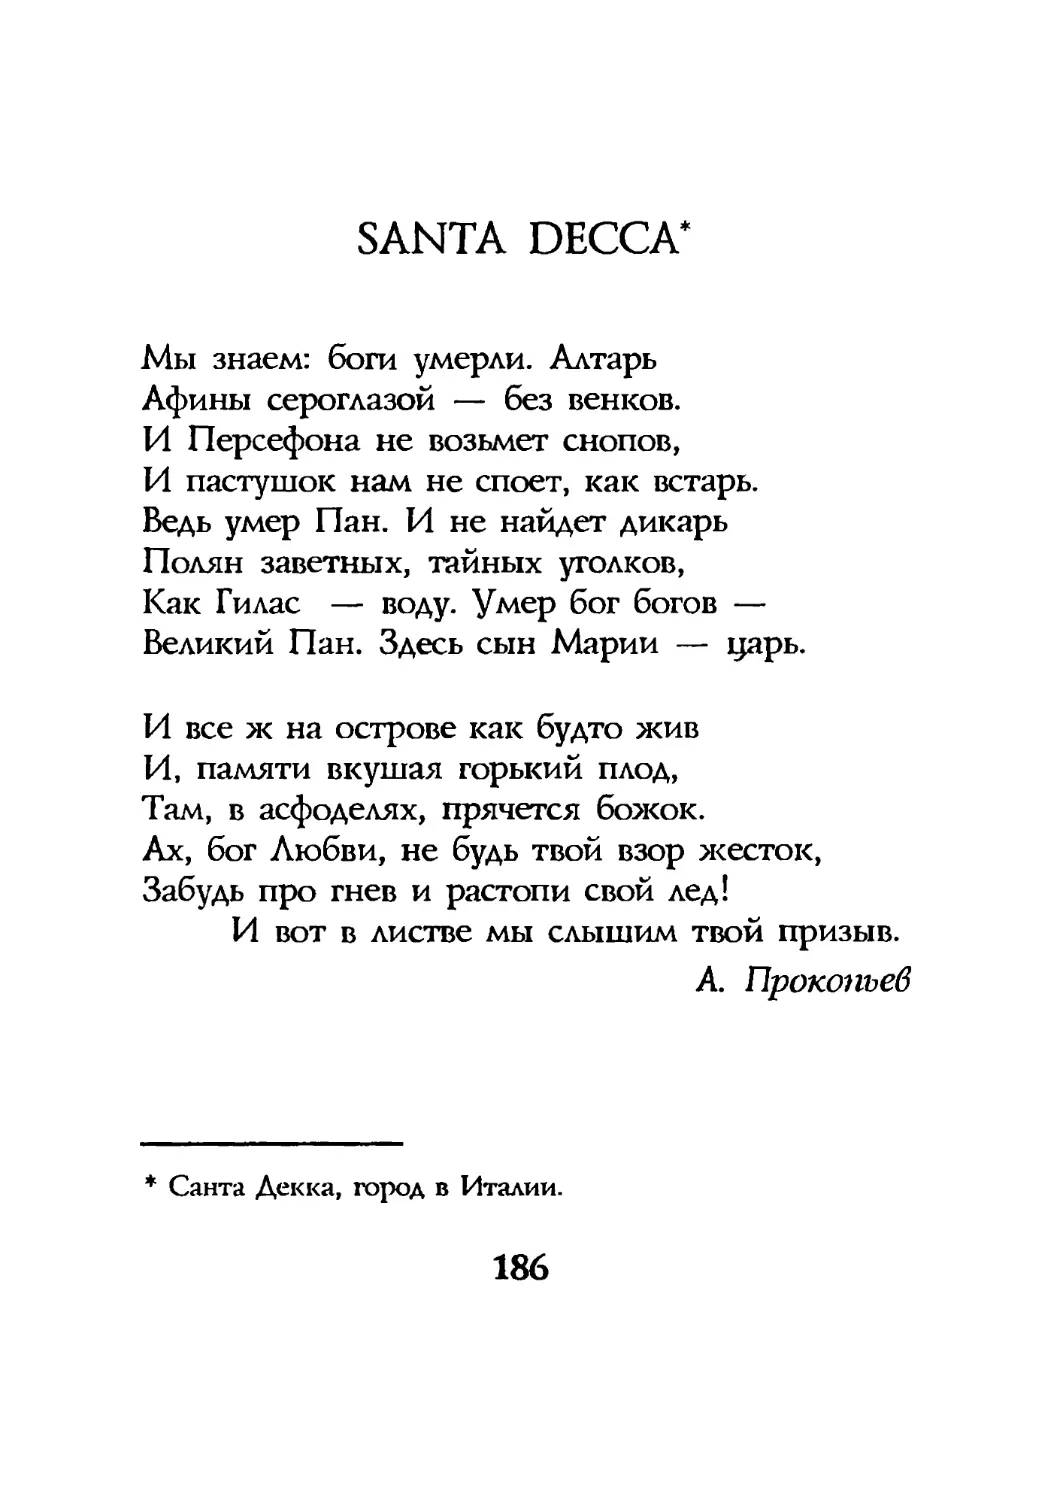 Santa Decca